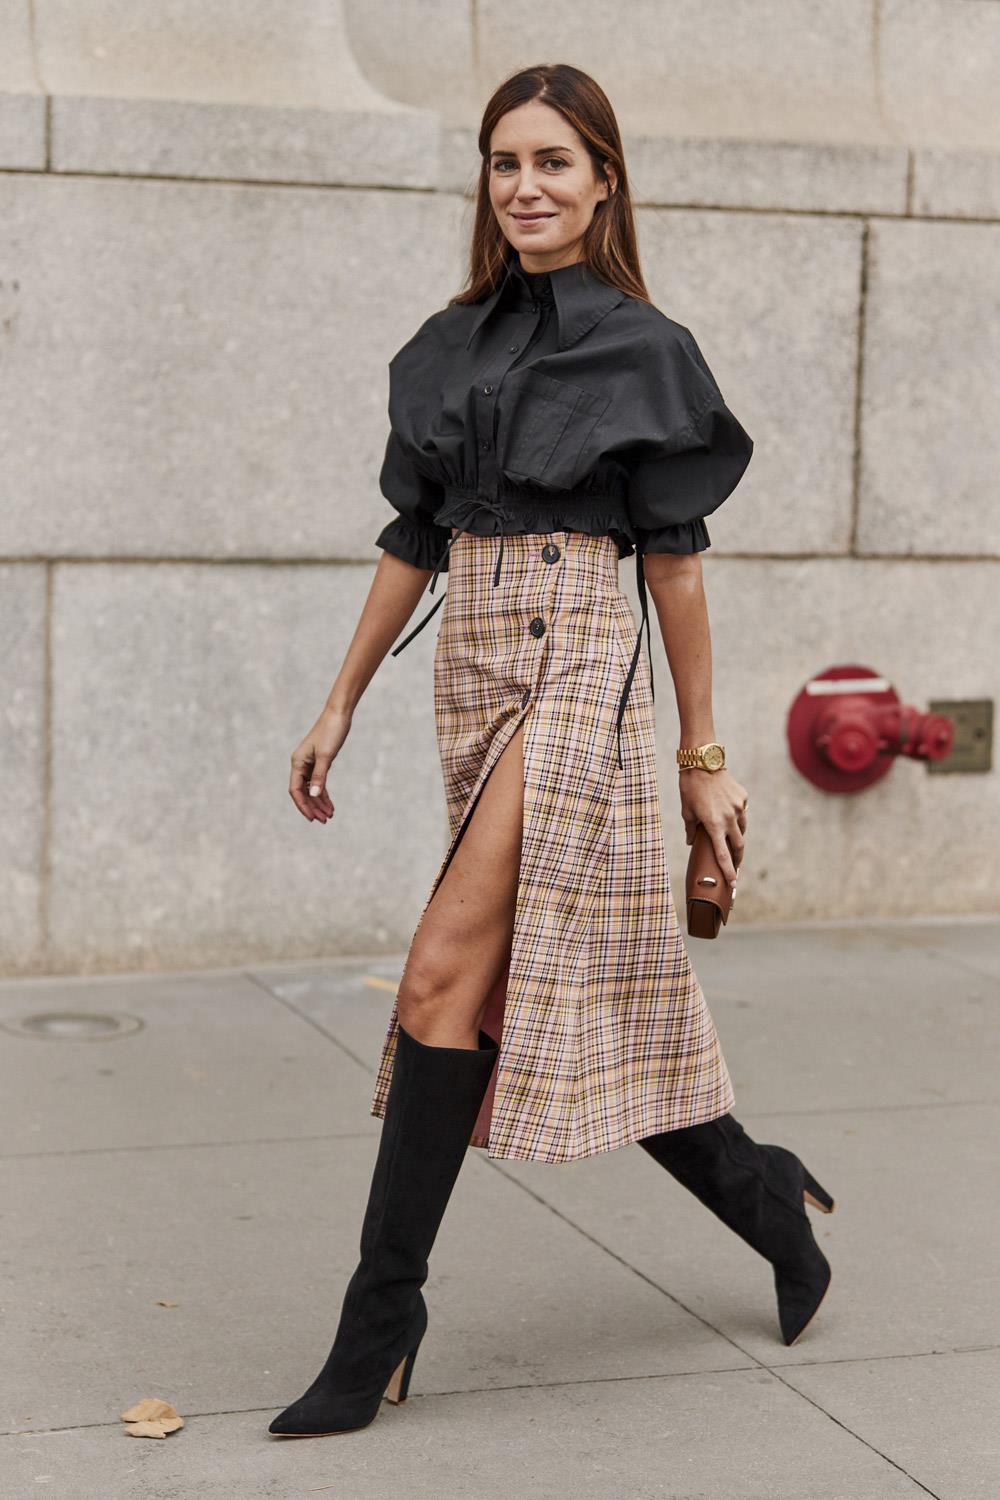 Cómo llevar falda: con looks con faldas influencers streetstyle 